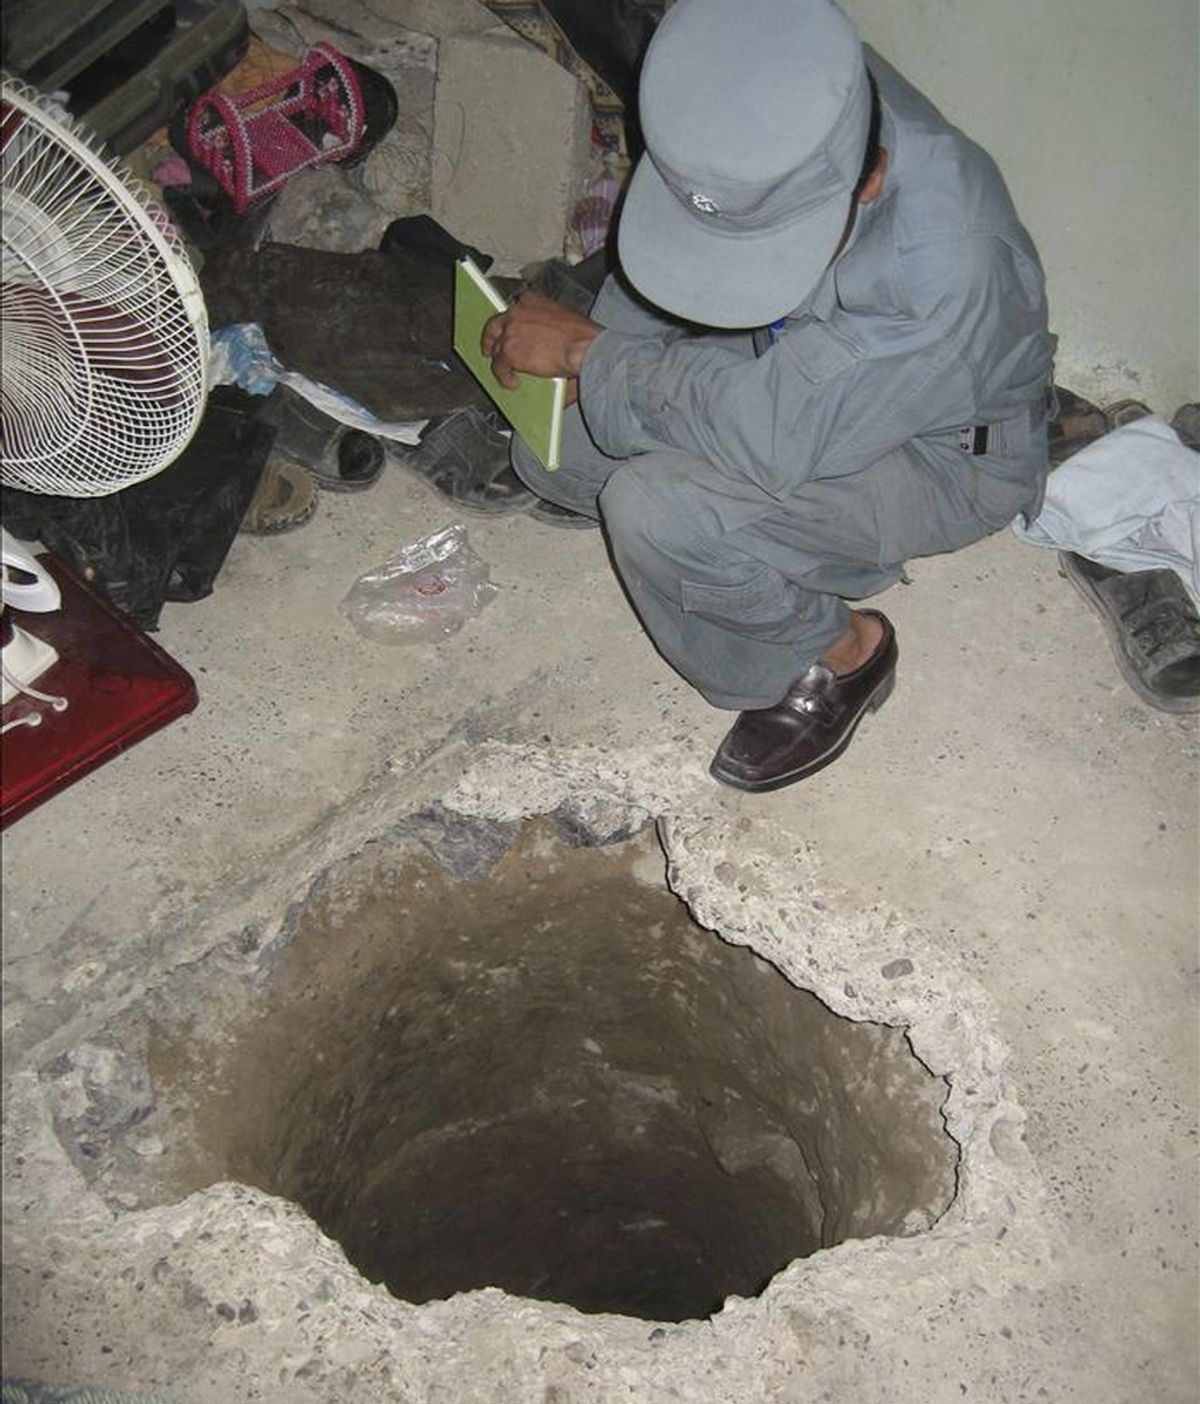 Policías afganos inspeccionan el túnel excavado por milicianos talibanes para escapar de una prisión de Kandahar, Afganistán, ayer lunes, 25 de abril de 2011. EFE